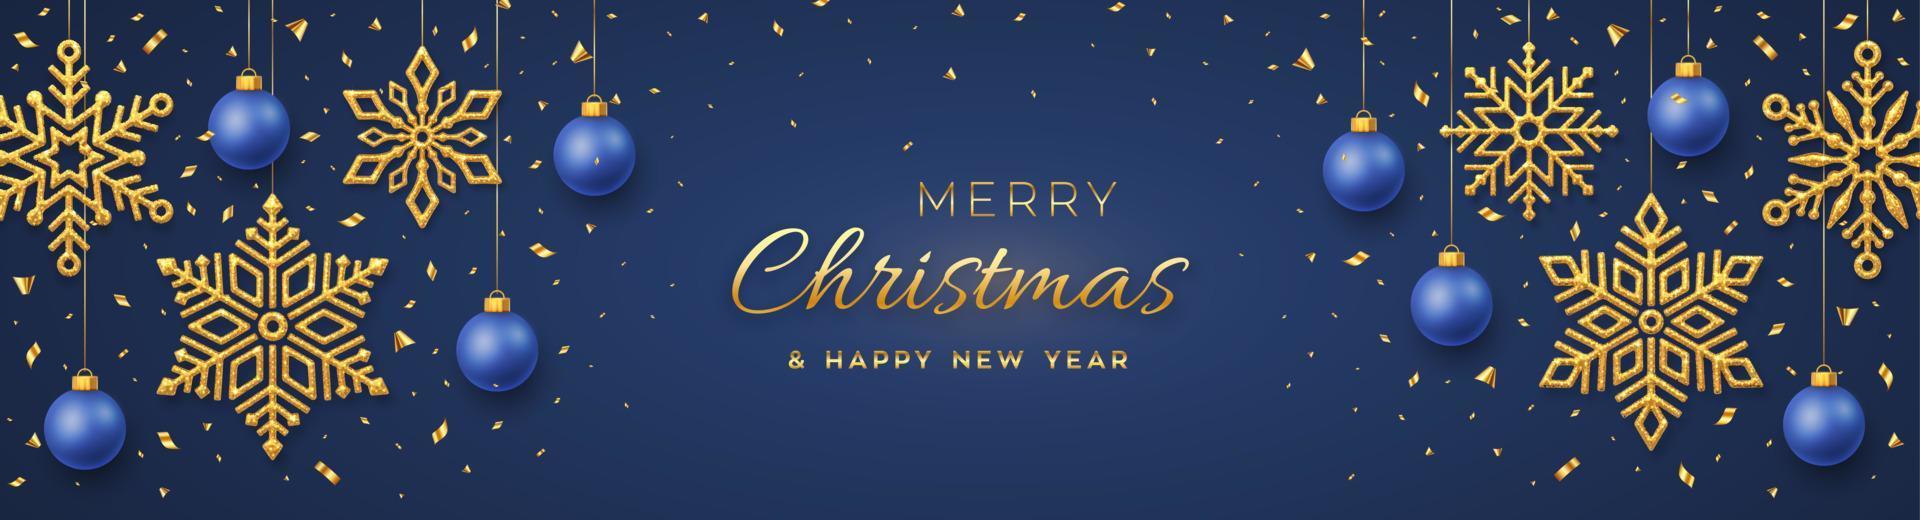 Kerst blauwe achtergrond met hangende glanzende gouden sneeuwvlokken en ballen. vrolijk kerstfeest wenskaart. vakantie kerstmis en nieuwjaar poster, webbanner. vector illustratie.